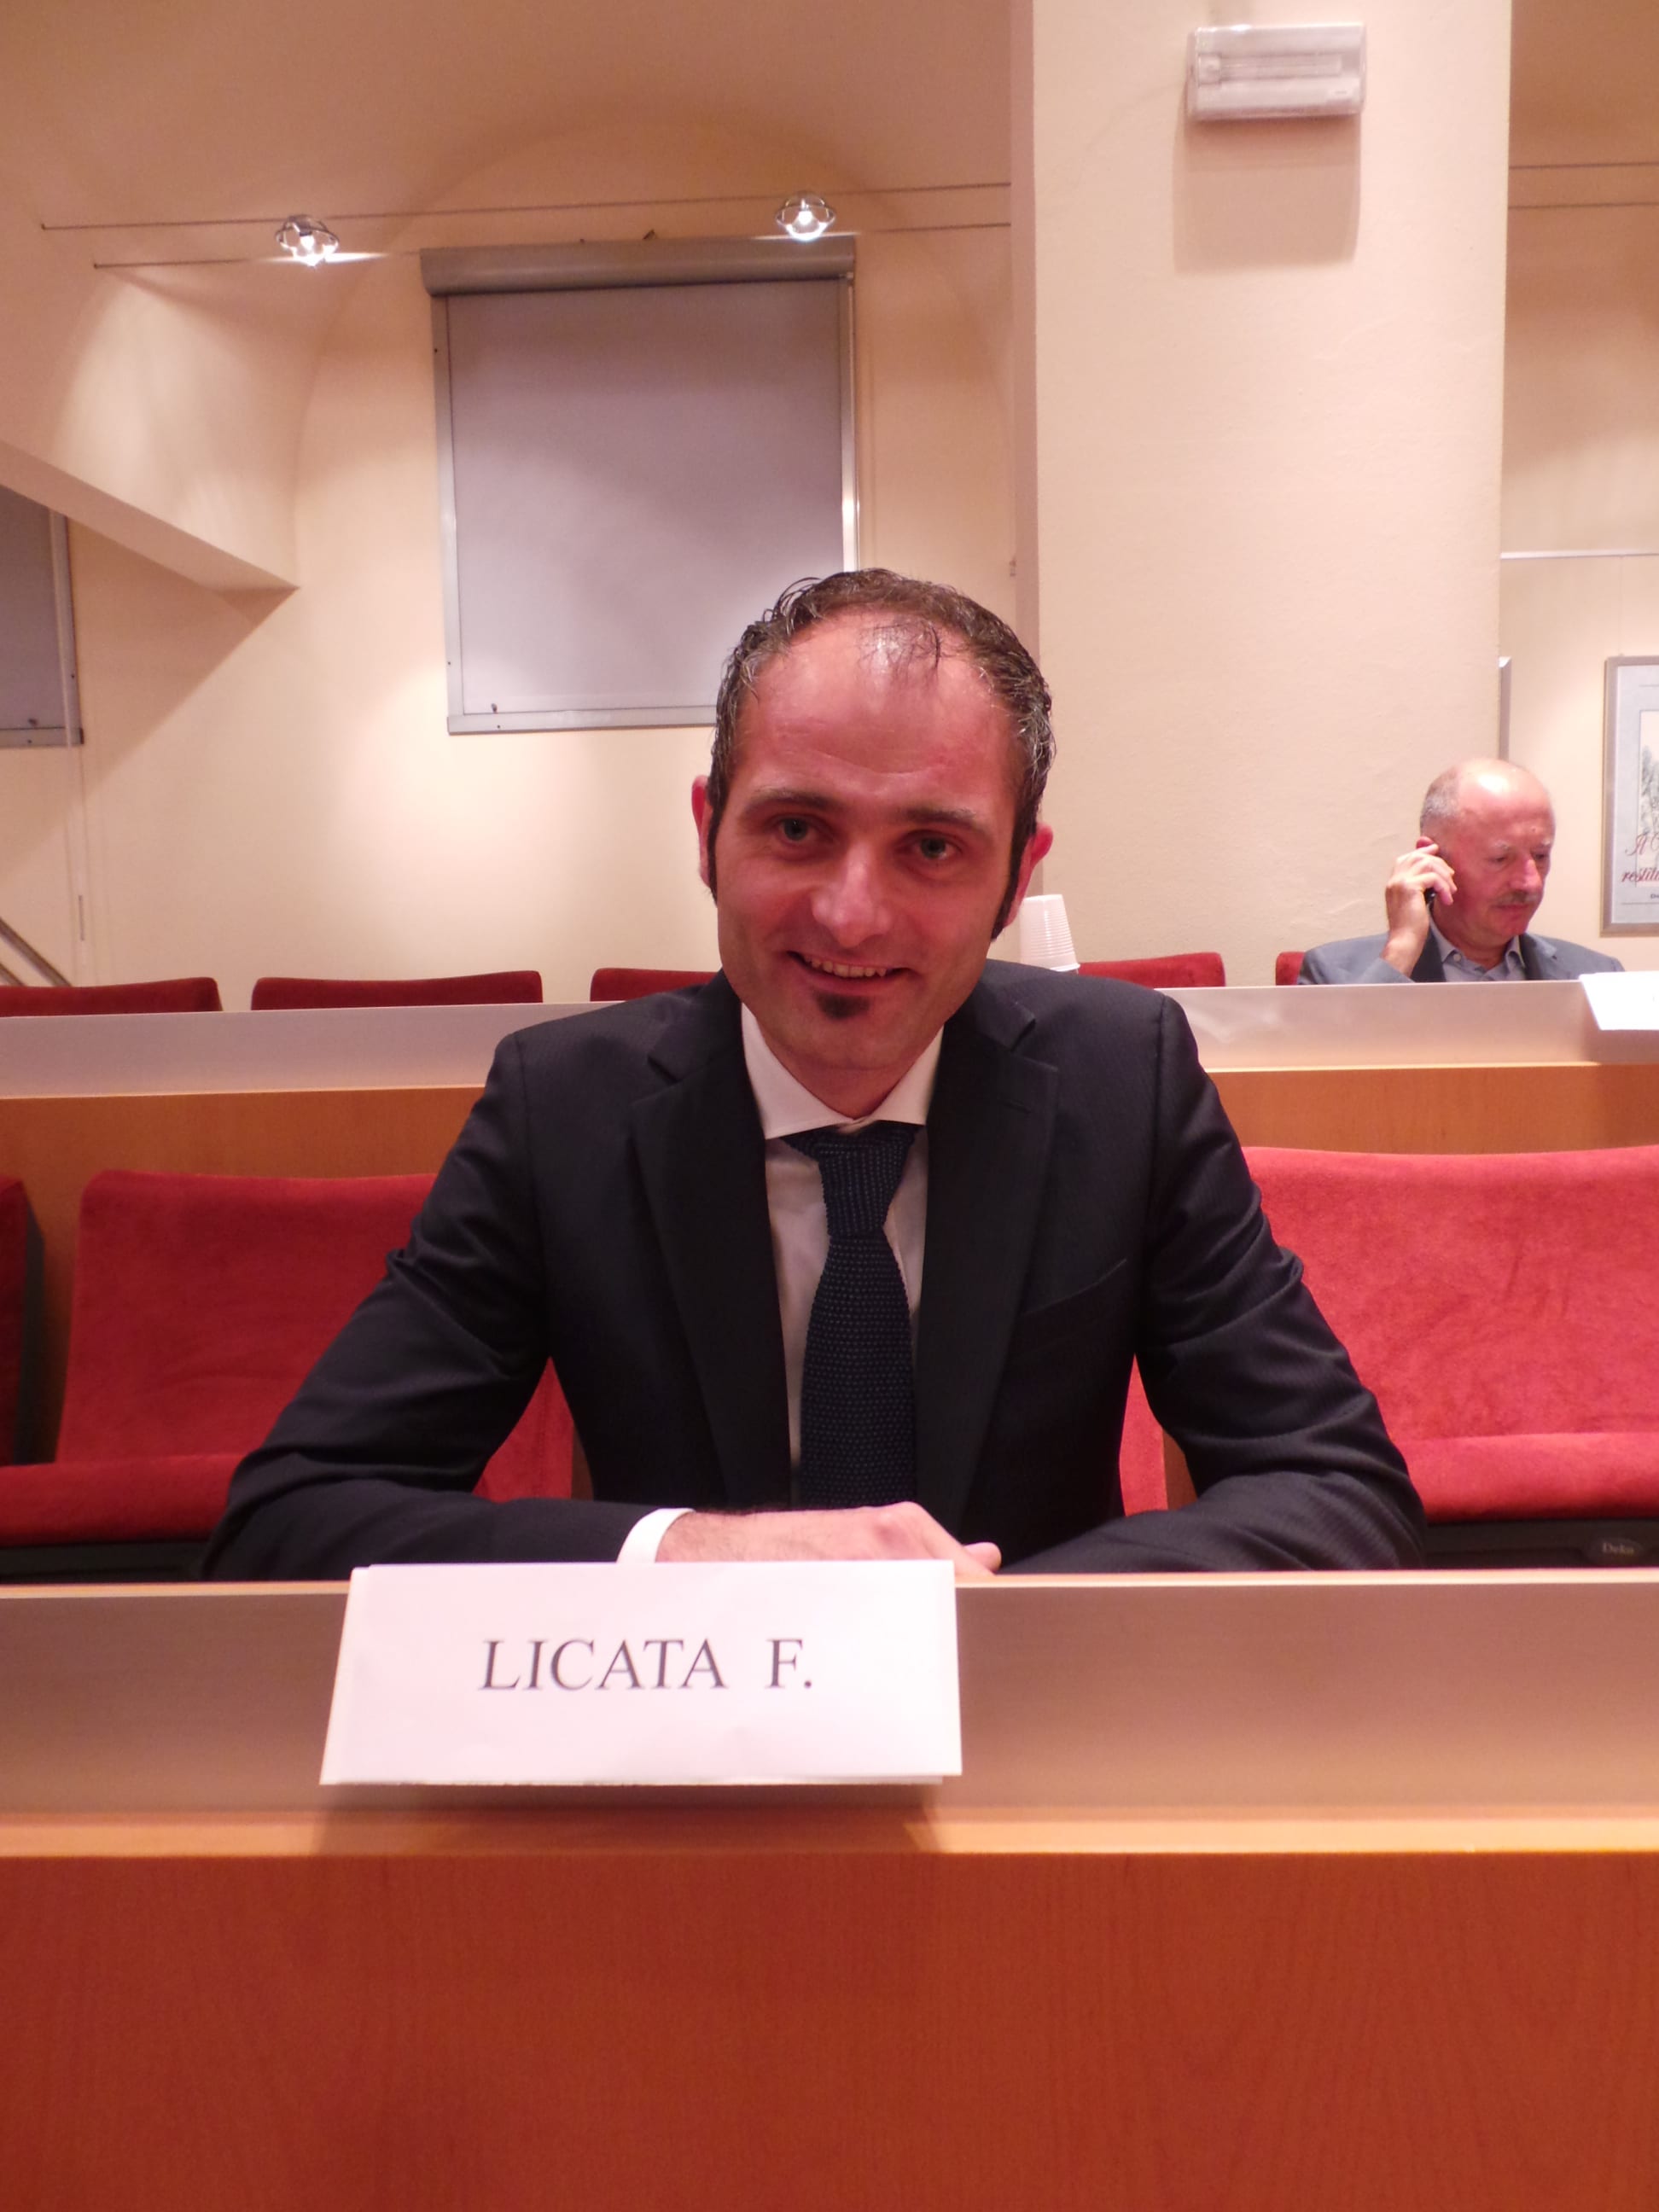 Riapertura Ztl, Licata: “Il sindaco Fagioli ha fatto flop, ordinanza da ritirare”